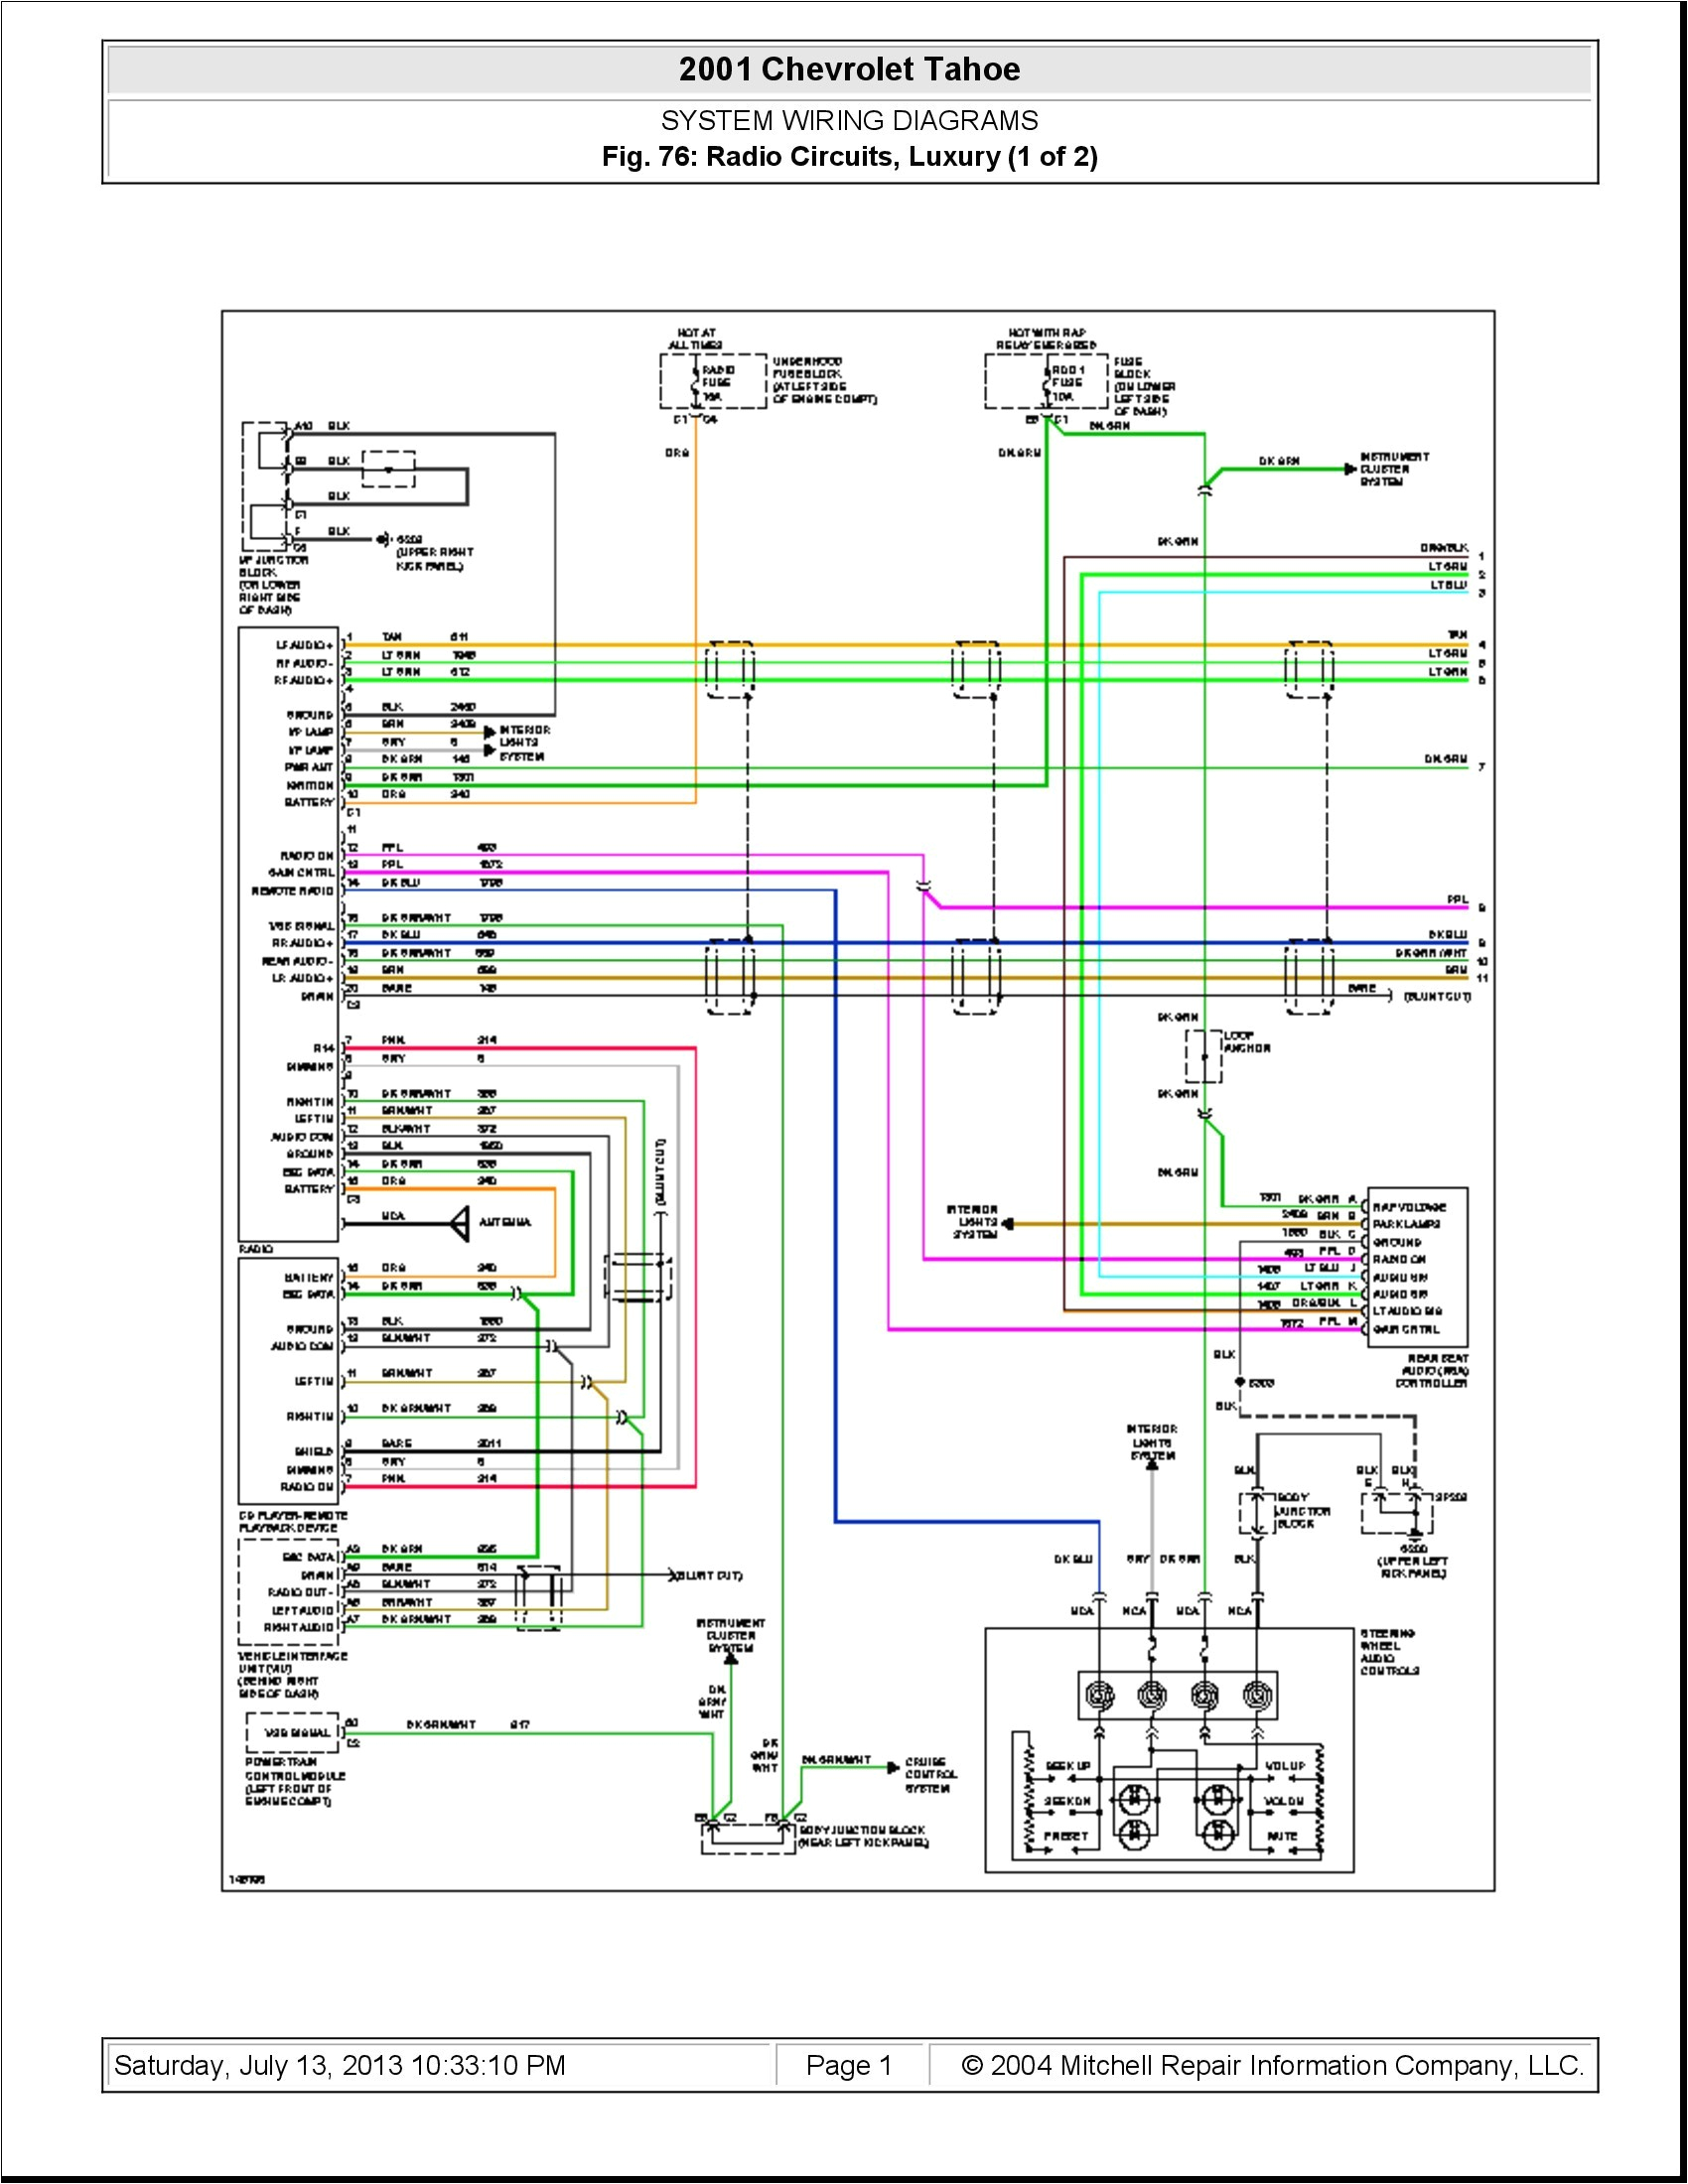 1992 corvette radio wiring wiring diagram sample wiring diagram bose gold series